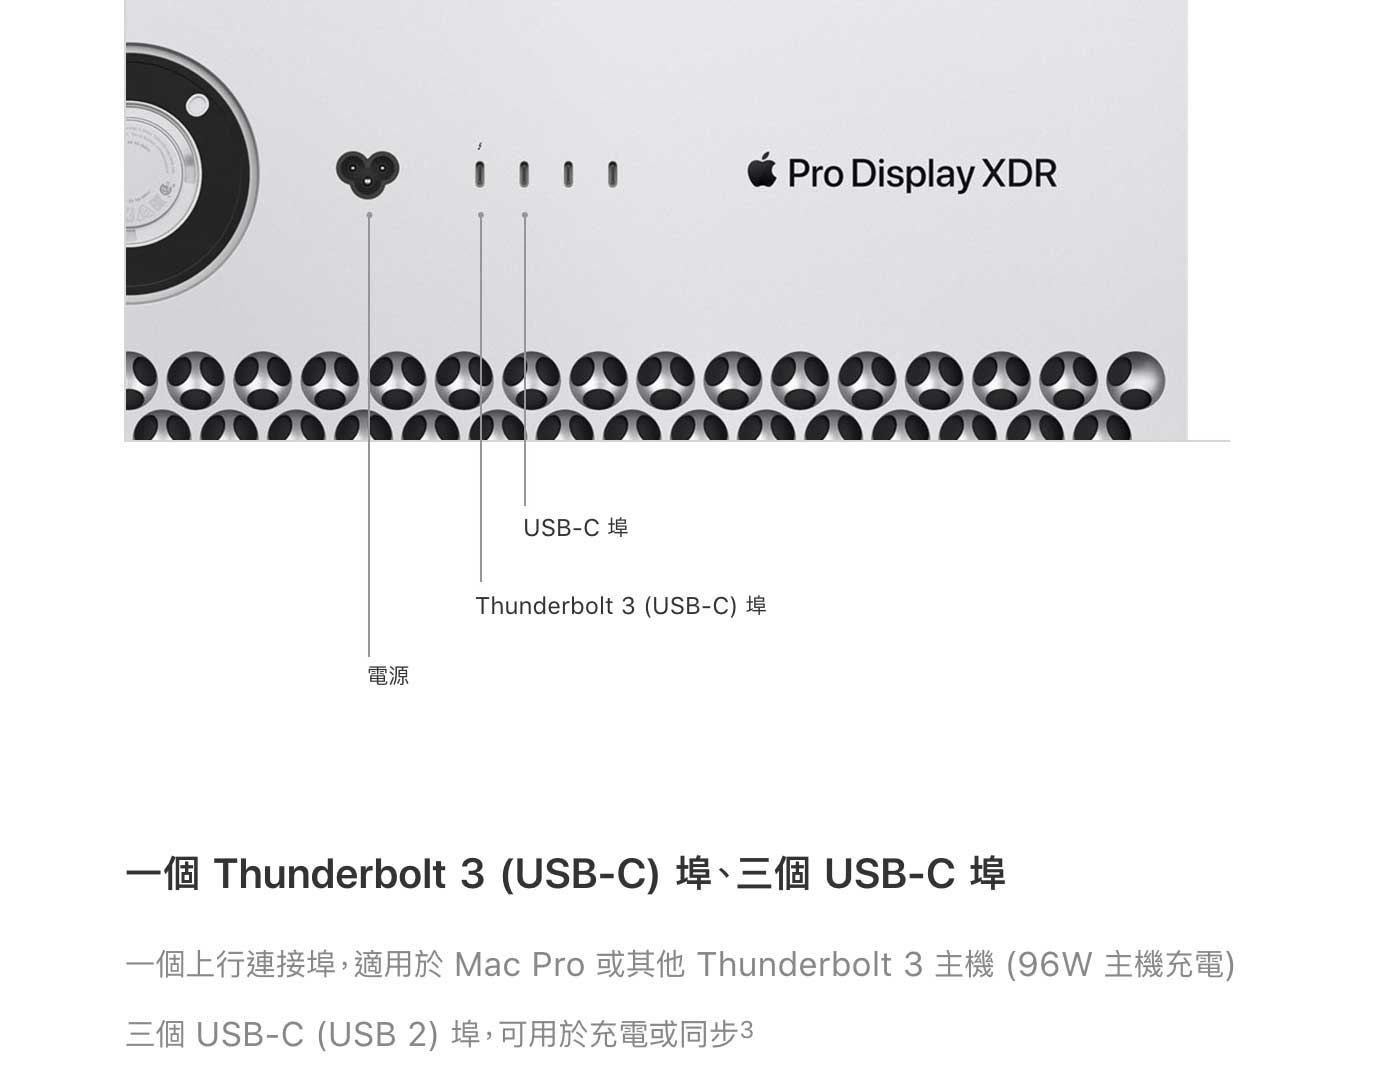 蘋果爆料消息傳新款 16吋MacBook Pro 配 96W USB-C 電源3